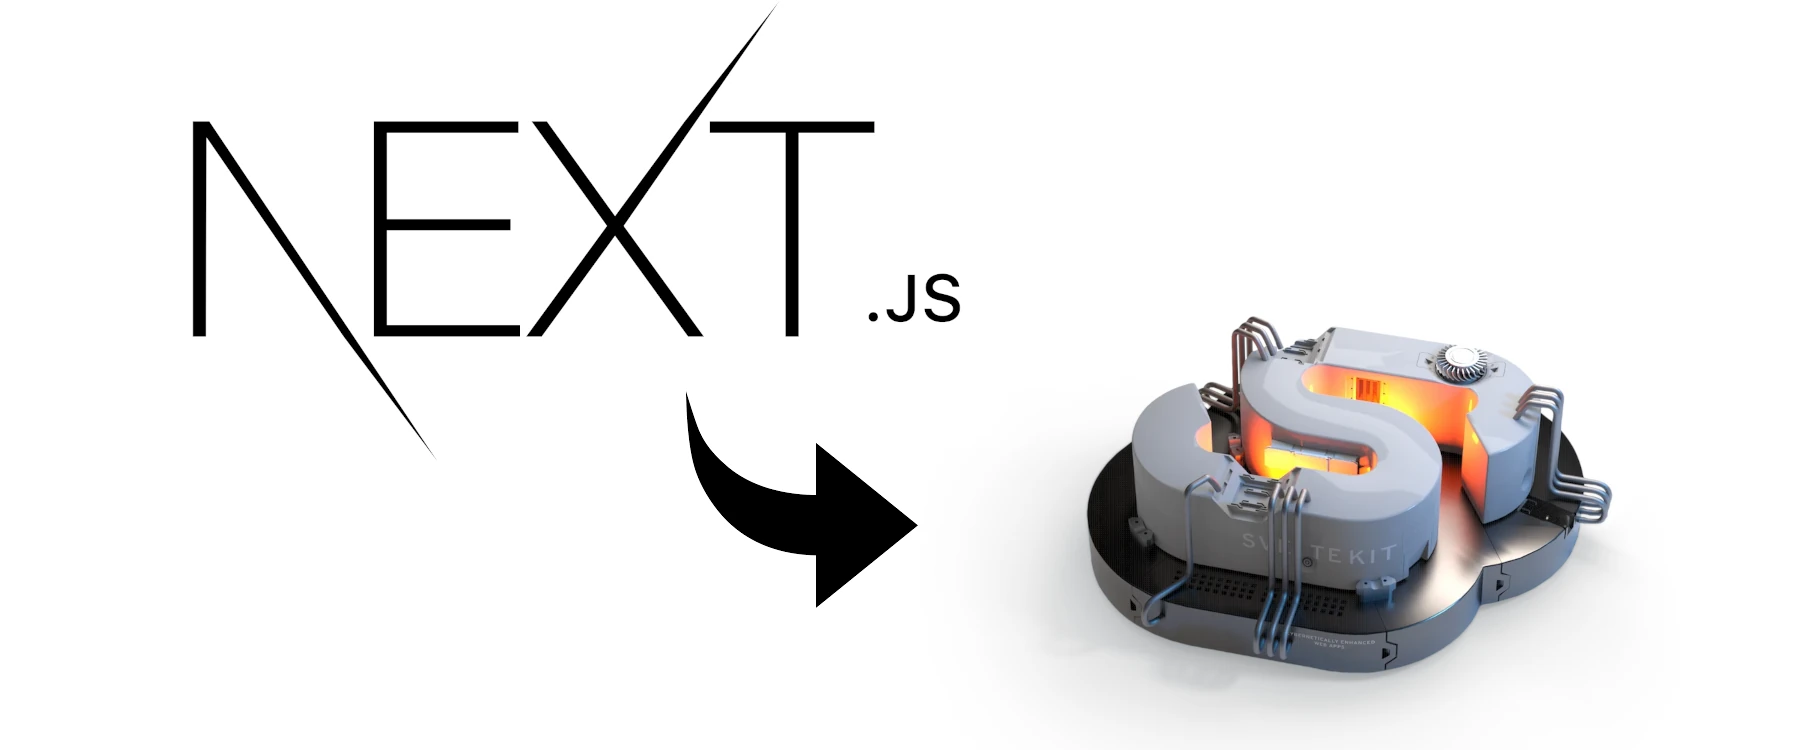 The Next.js logo and an arrow pointing towards the SvelteKit logo